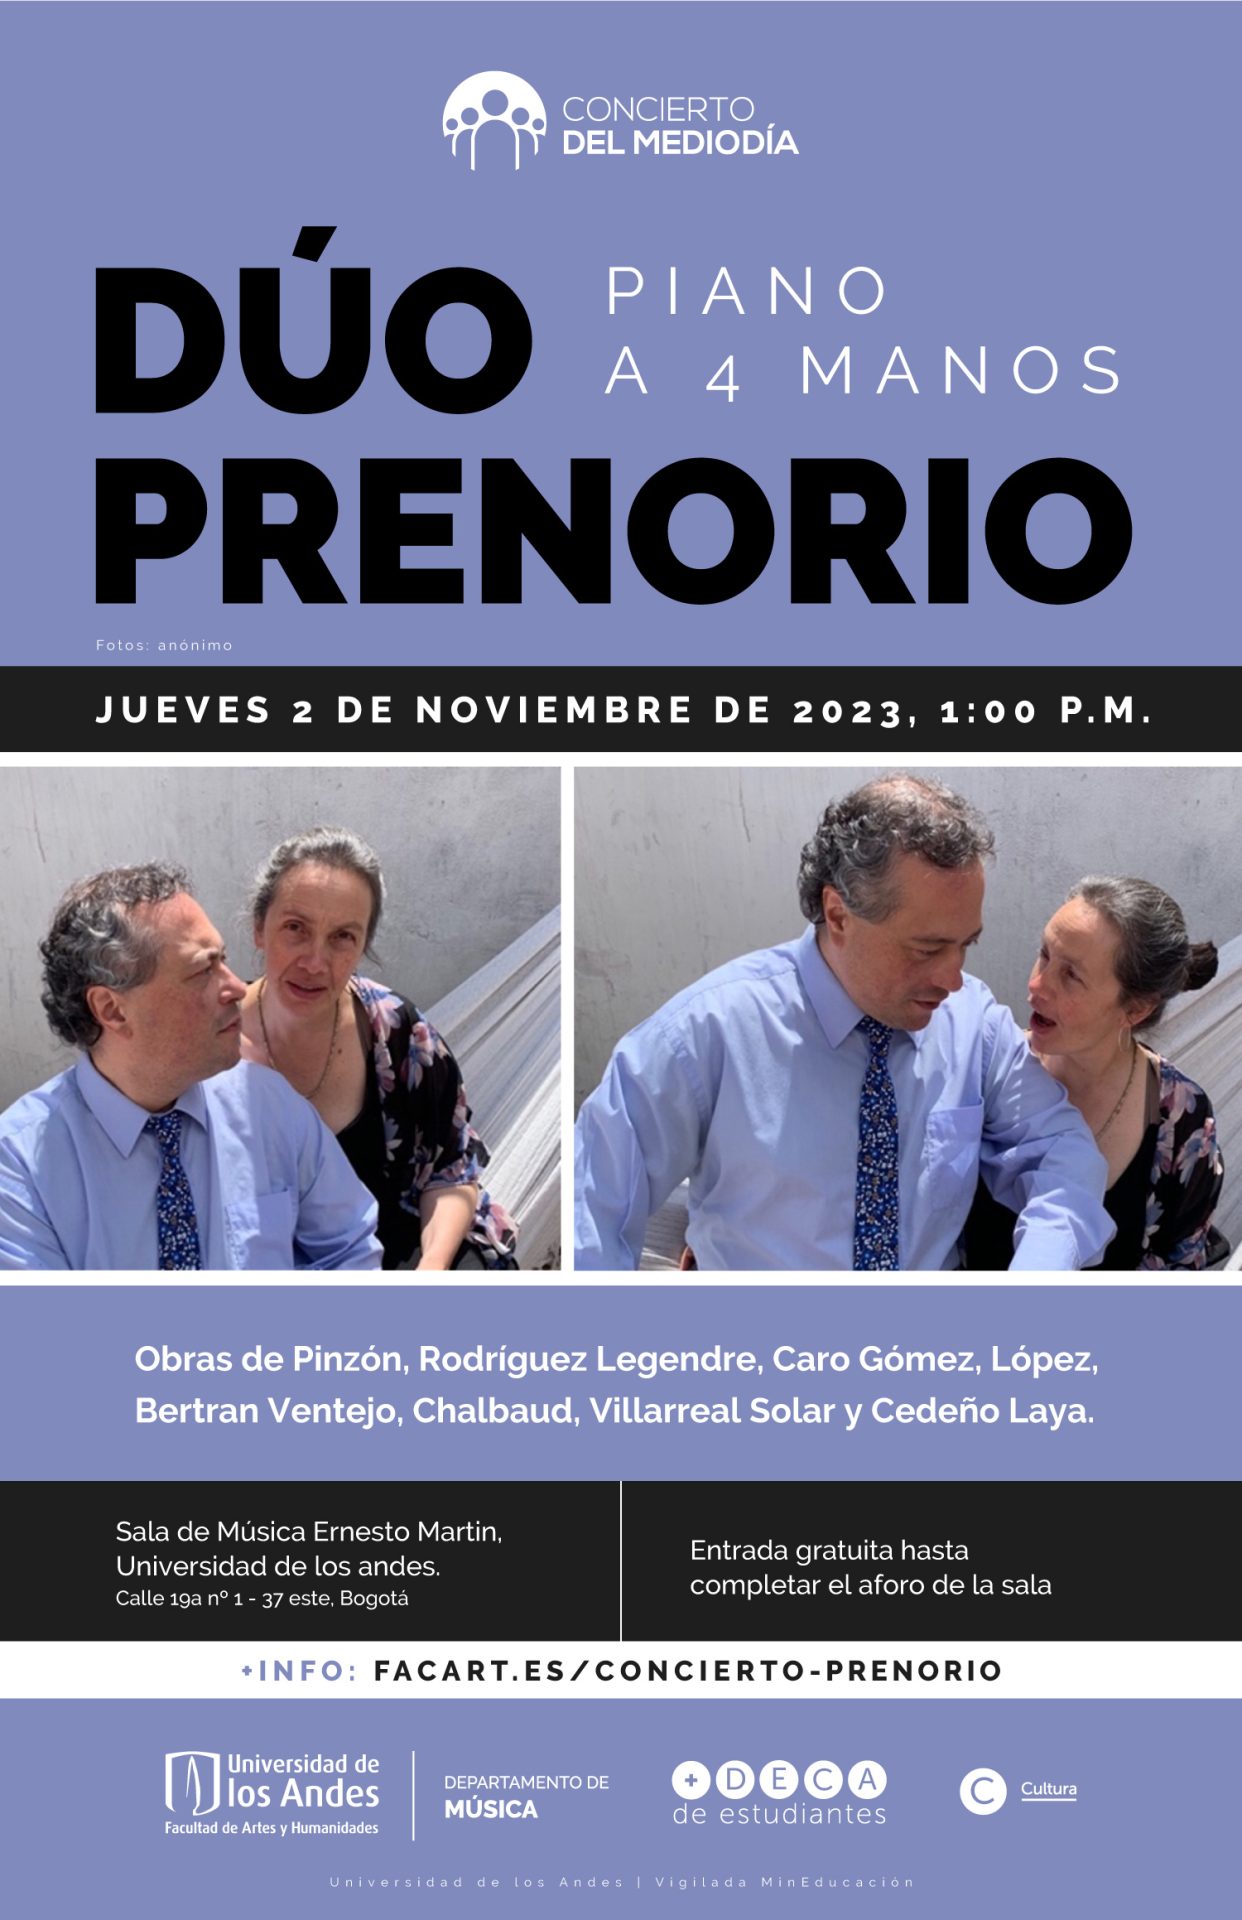 Jueves de 2 de noviembre de 2023 a la 1:00 p.m. en la sala de música Ernesto Martin, Universidad de los Andes